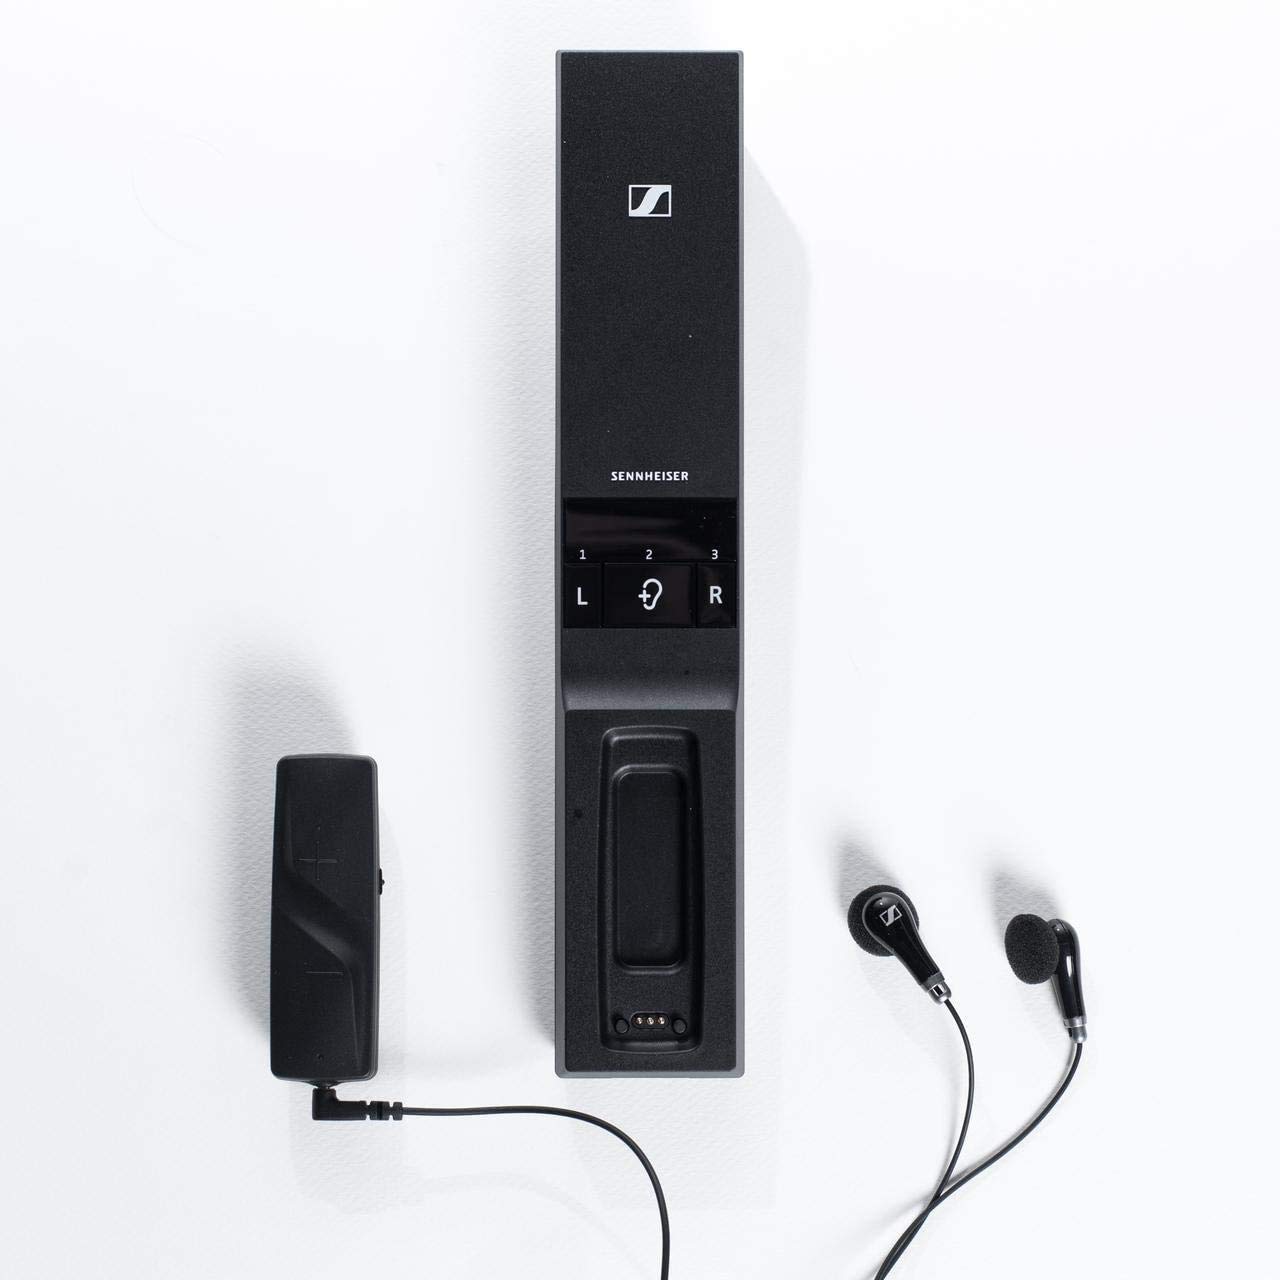 Sennheiser Consumer Audio Цифровые беспроводные наушники Flex 5000 для прослушивания ТВ — черные